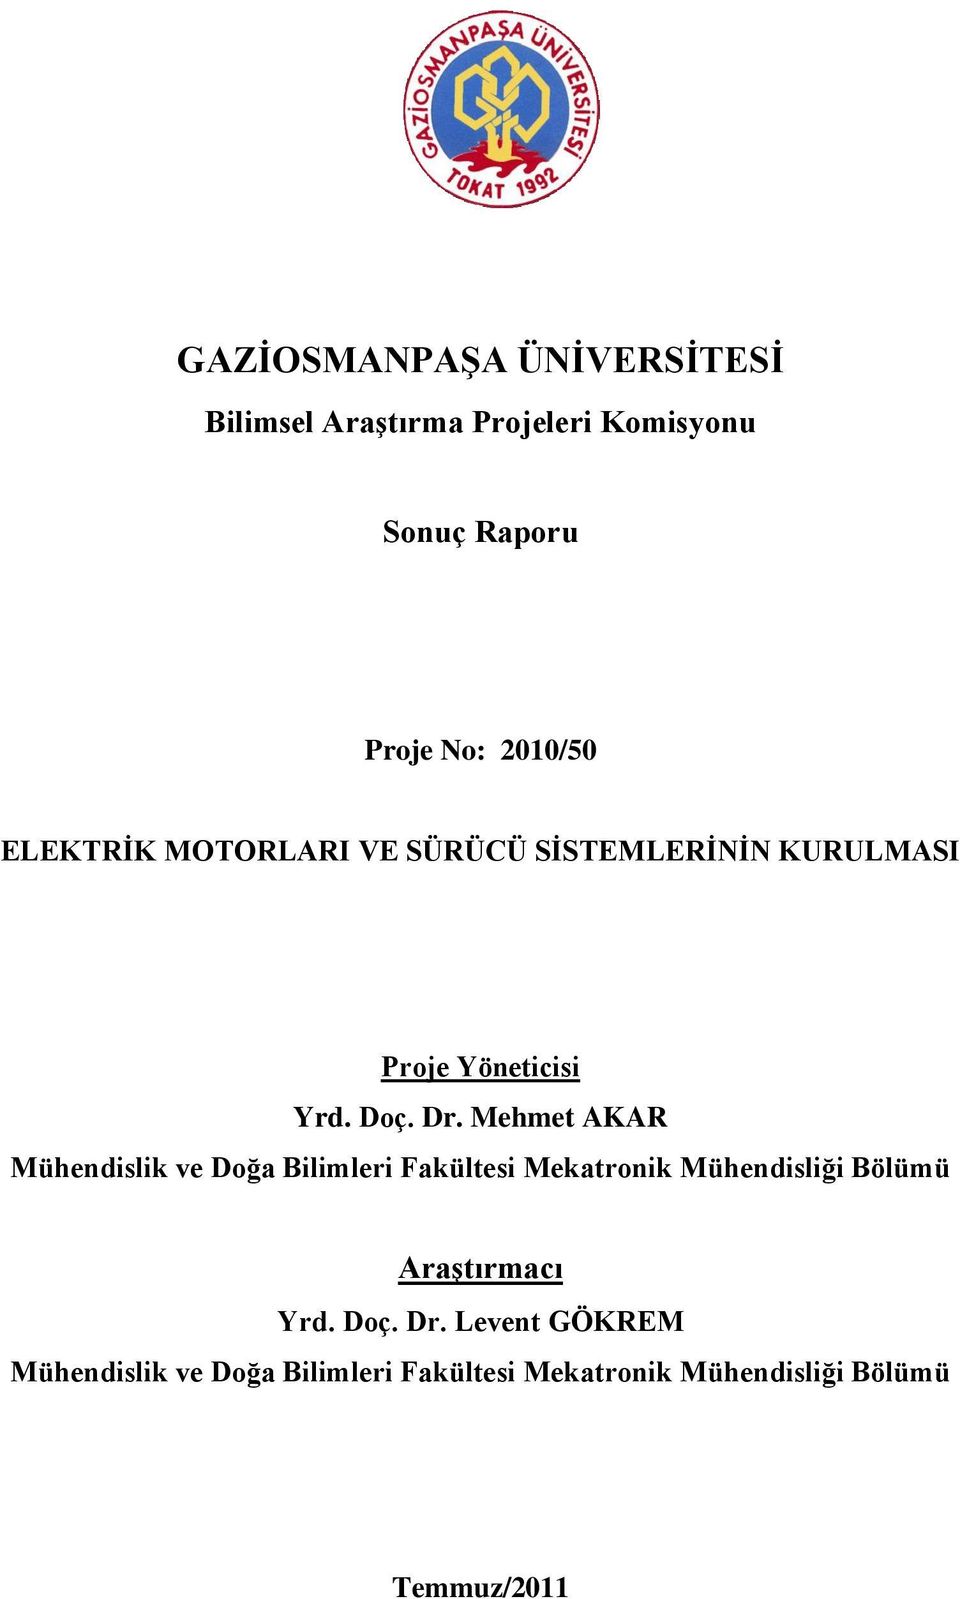 Mehmet AKAR Mühendislik ve Doğa Bilimleri Fakültesi Mekatronik Mühendisliği Bölümü Araştırmacı